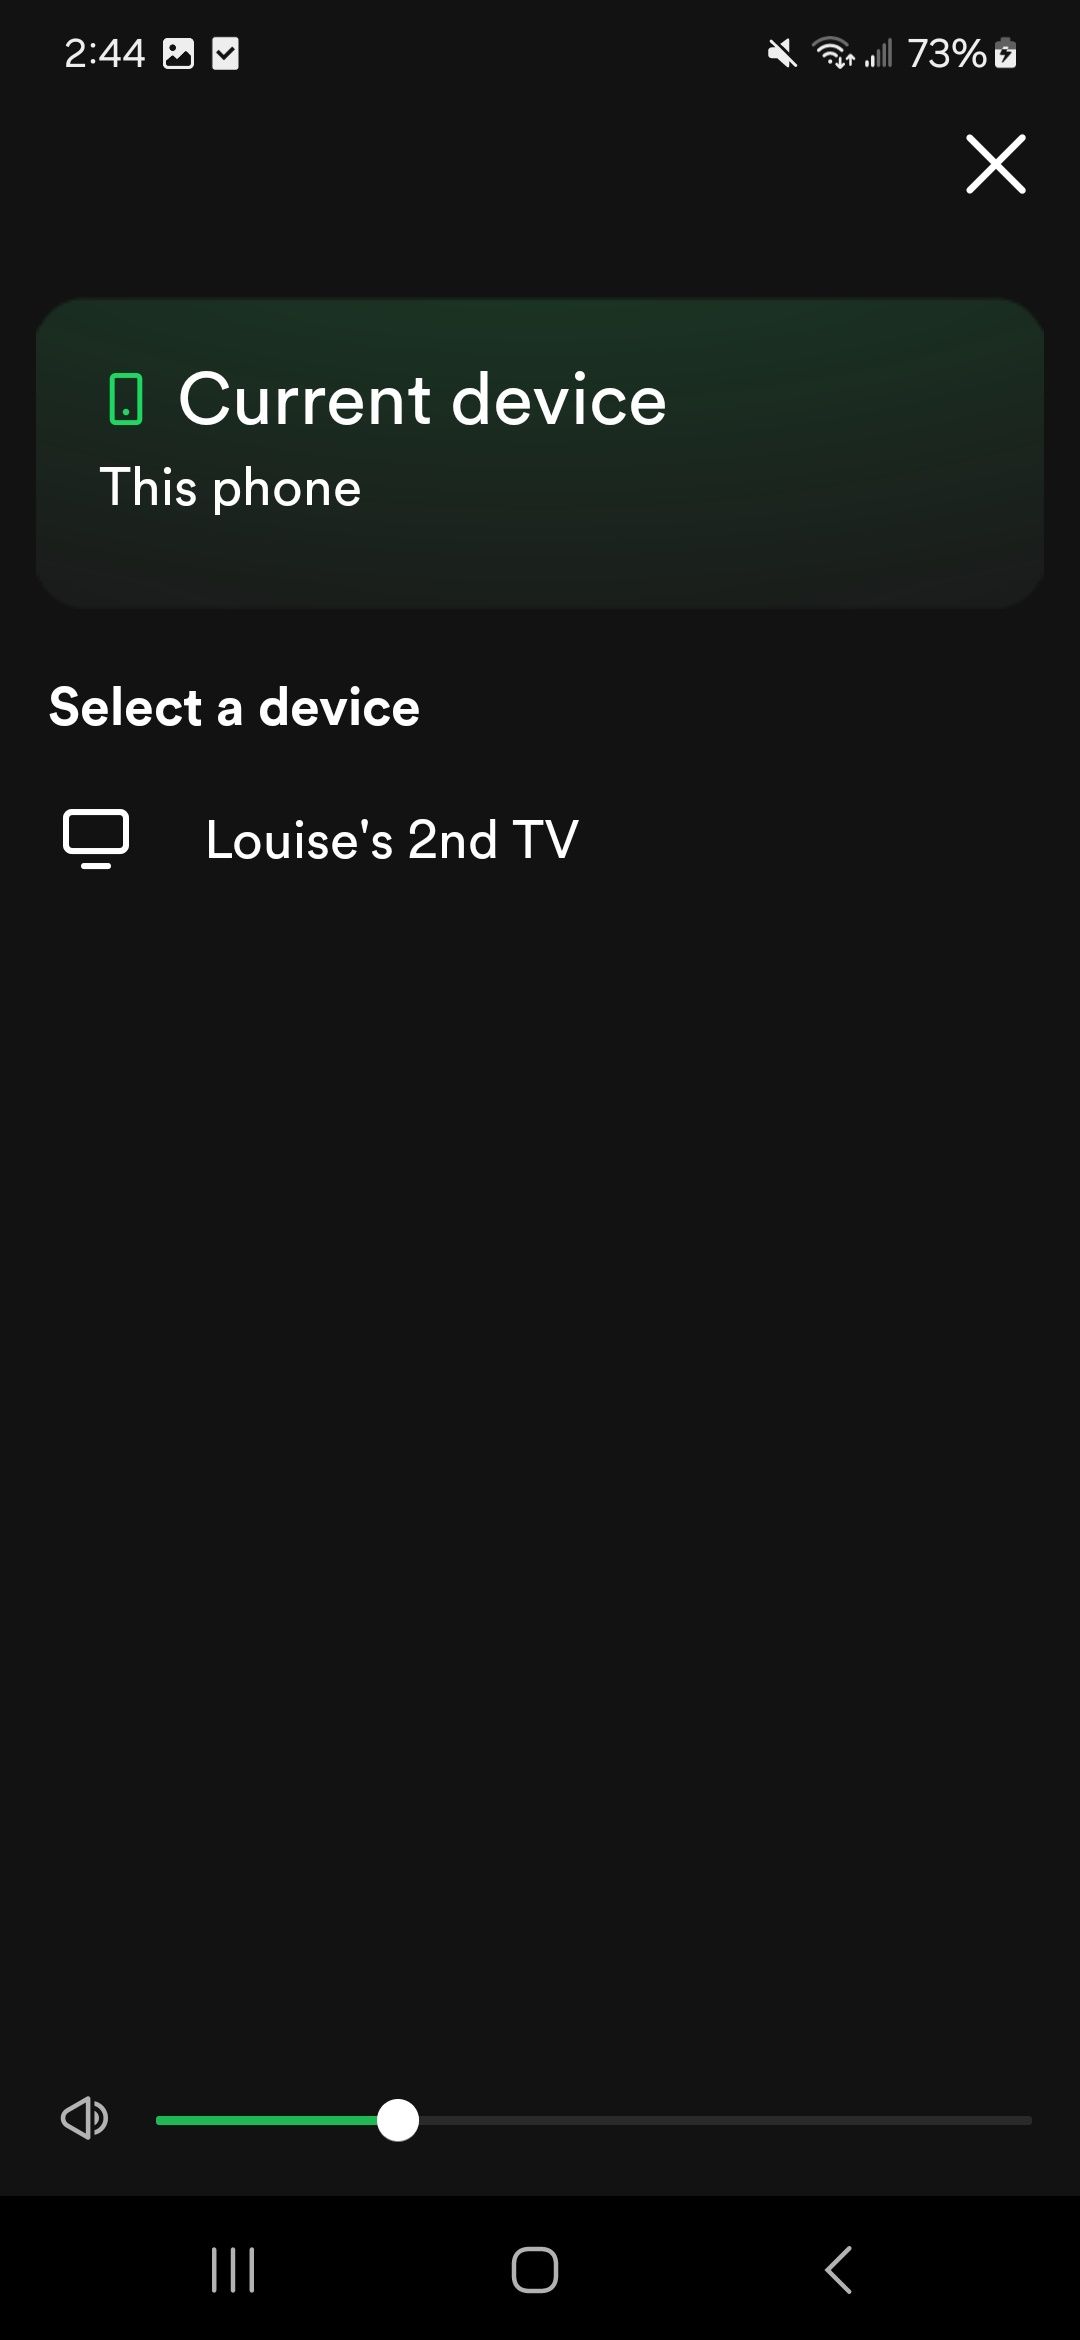 dispositivo atual e selecione uma página de dispositivo no aplicativo Spotify para Spotify Connect